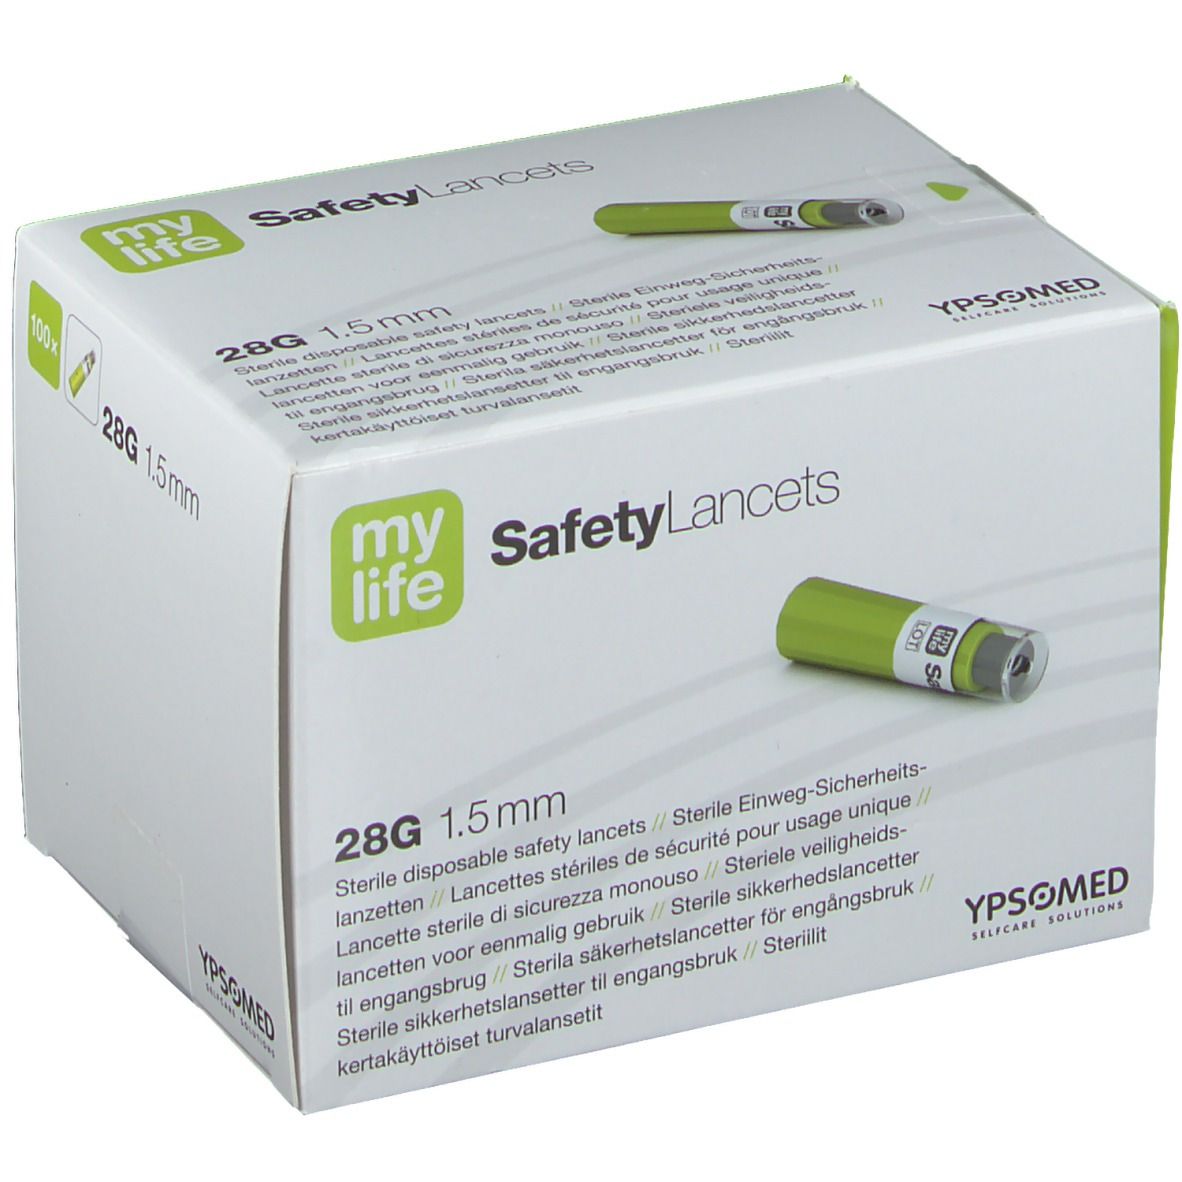 mylife SafetyLancets Comfort Sicherheitsnadeln 28G 1,5 mm